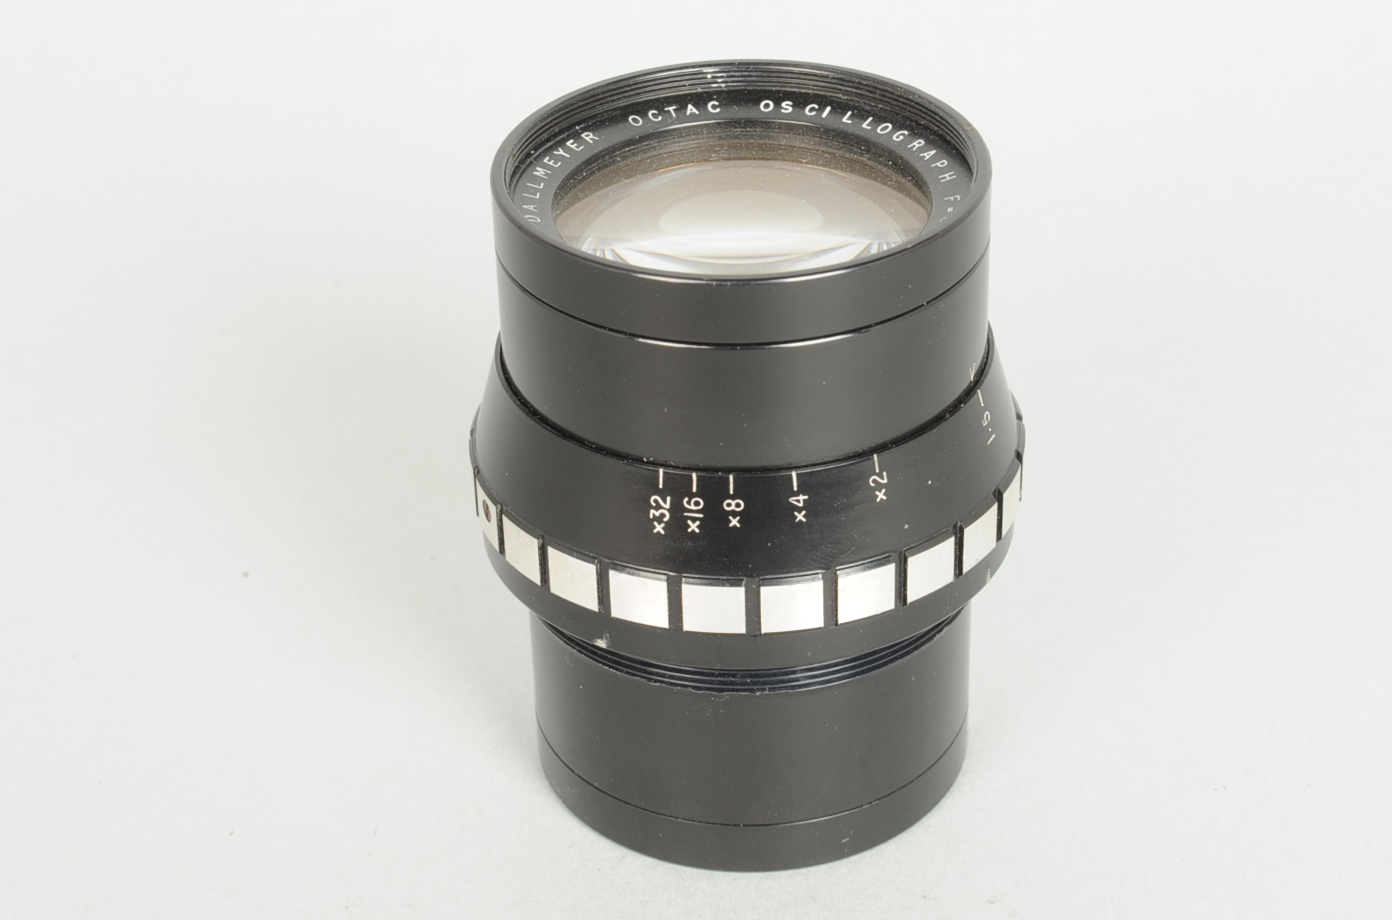 A Dallmeyer Octac Oscillograph 80mm f/1.5 Lens, serial no 719883, barrel G-VG, elements G, tiny nick - Image 3 of 3